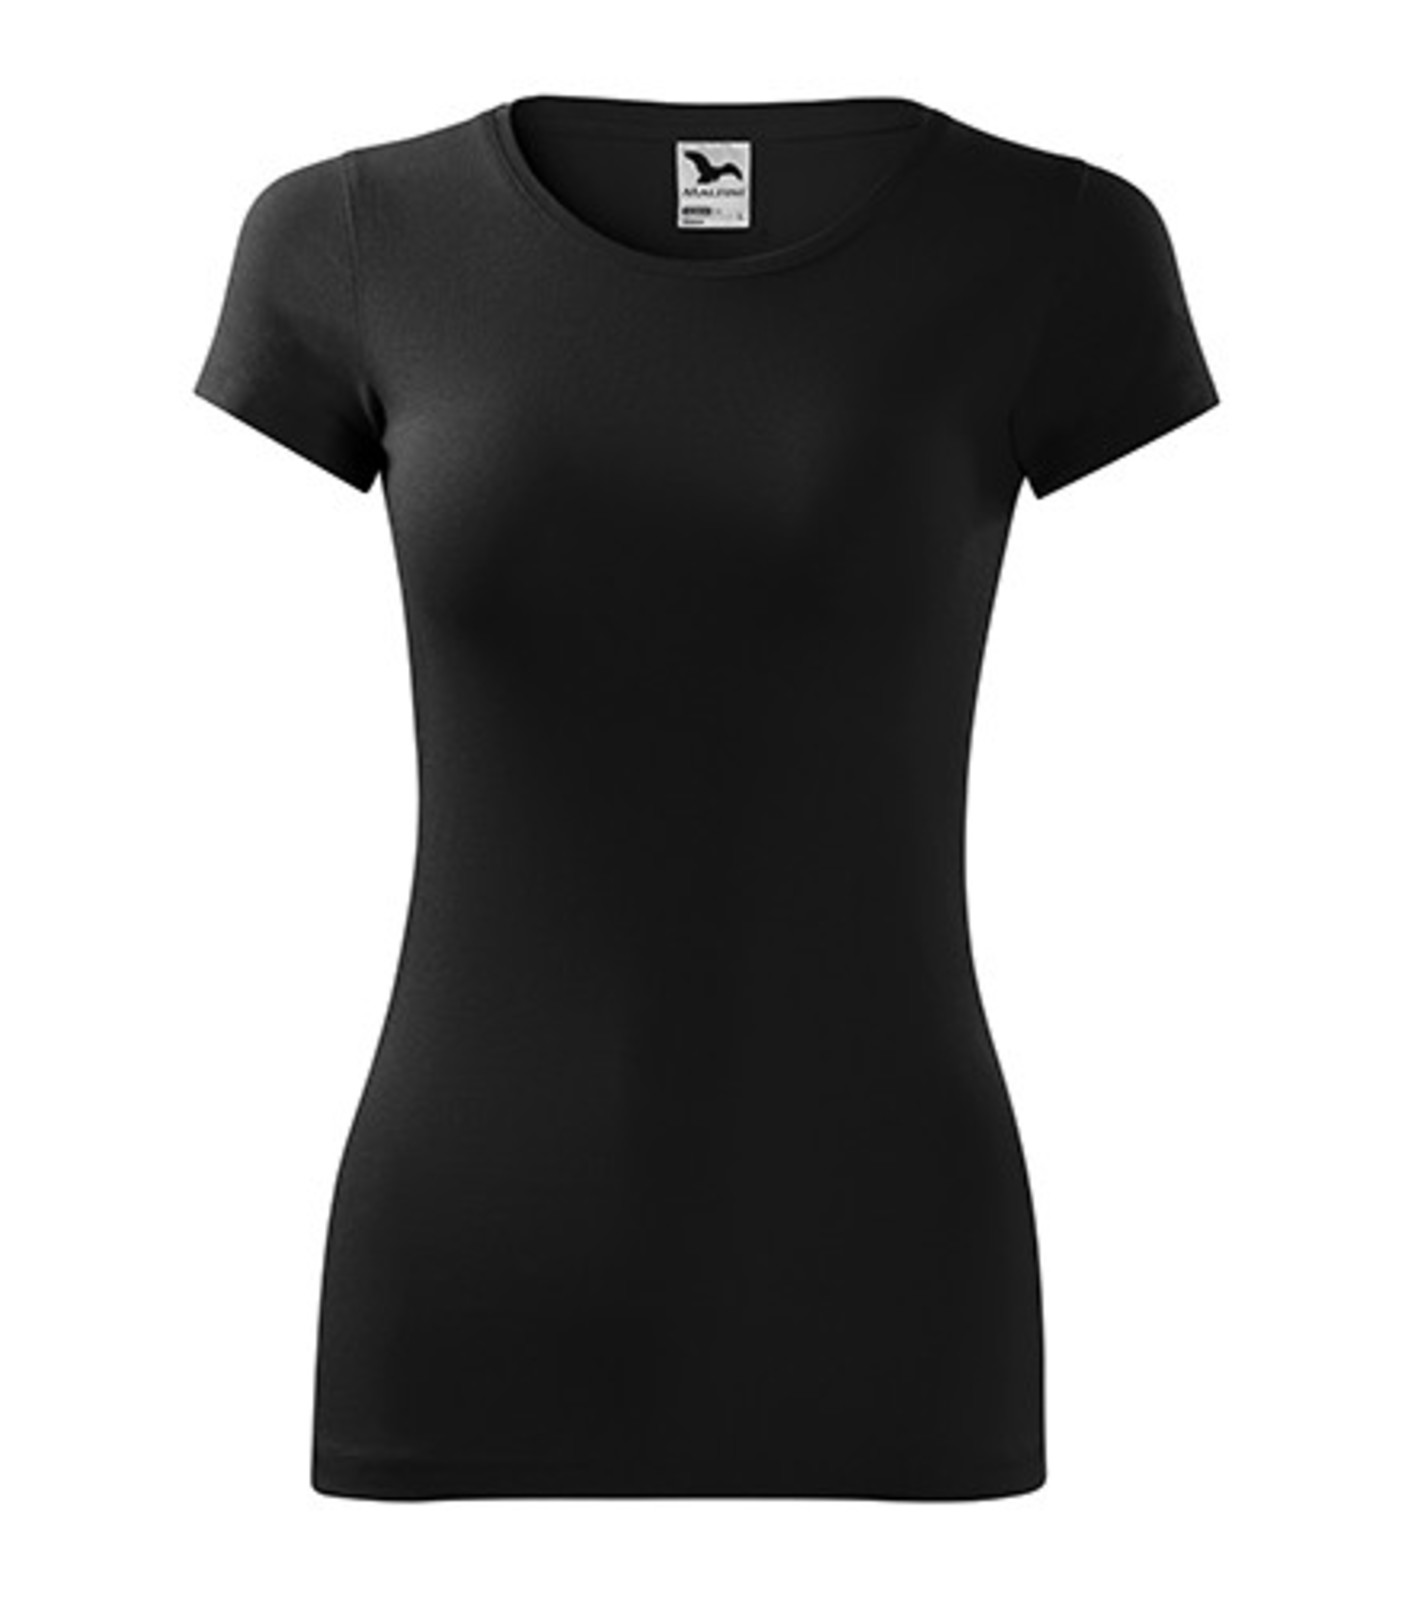 Dámske tričko Adler Glance 141 - veľkosť: XL, farba: čierna